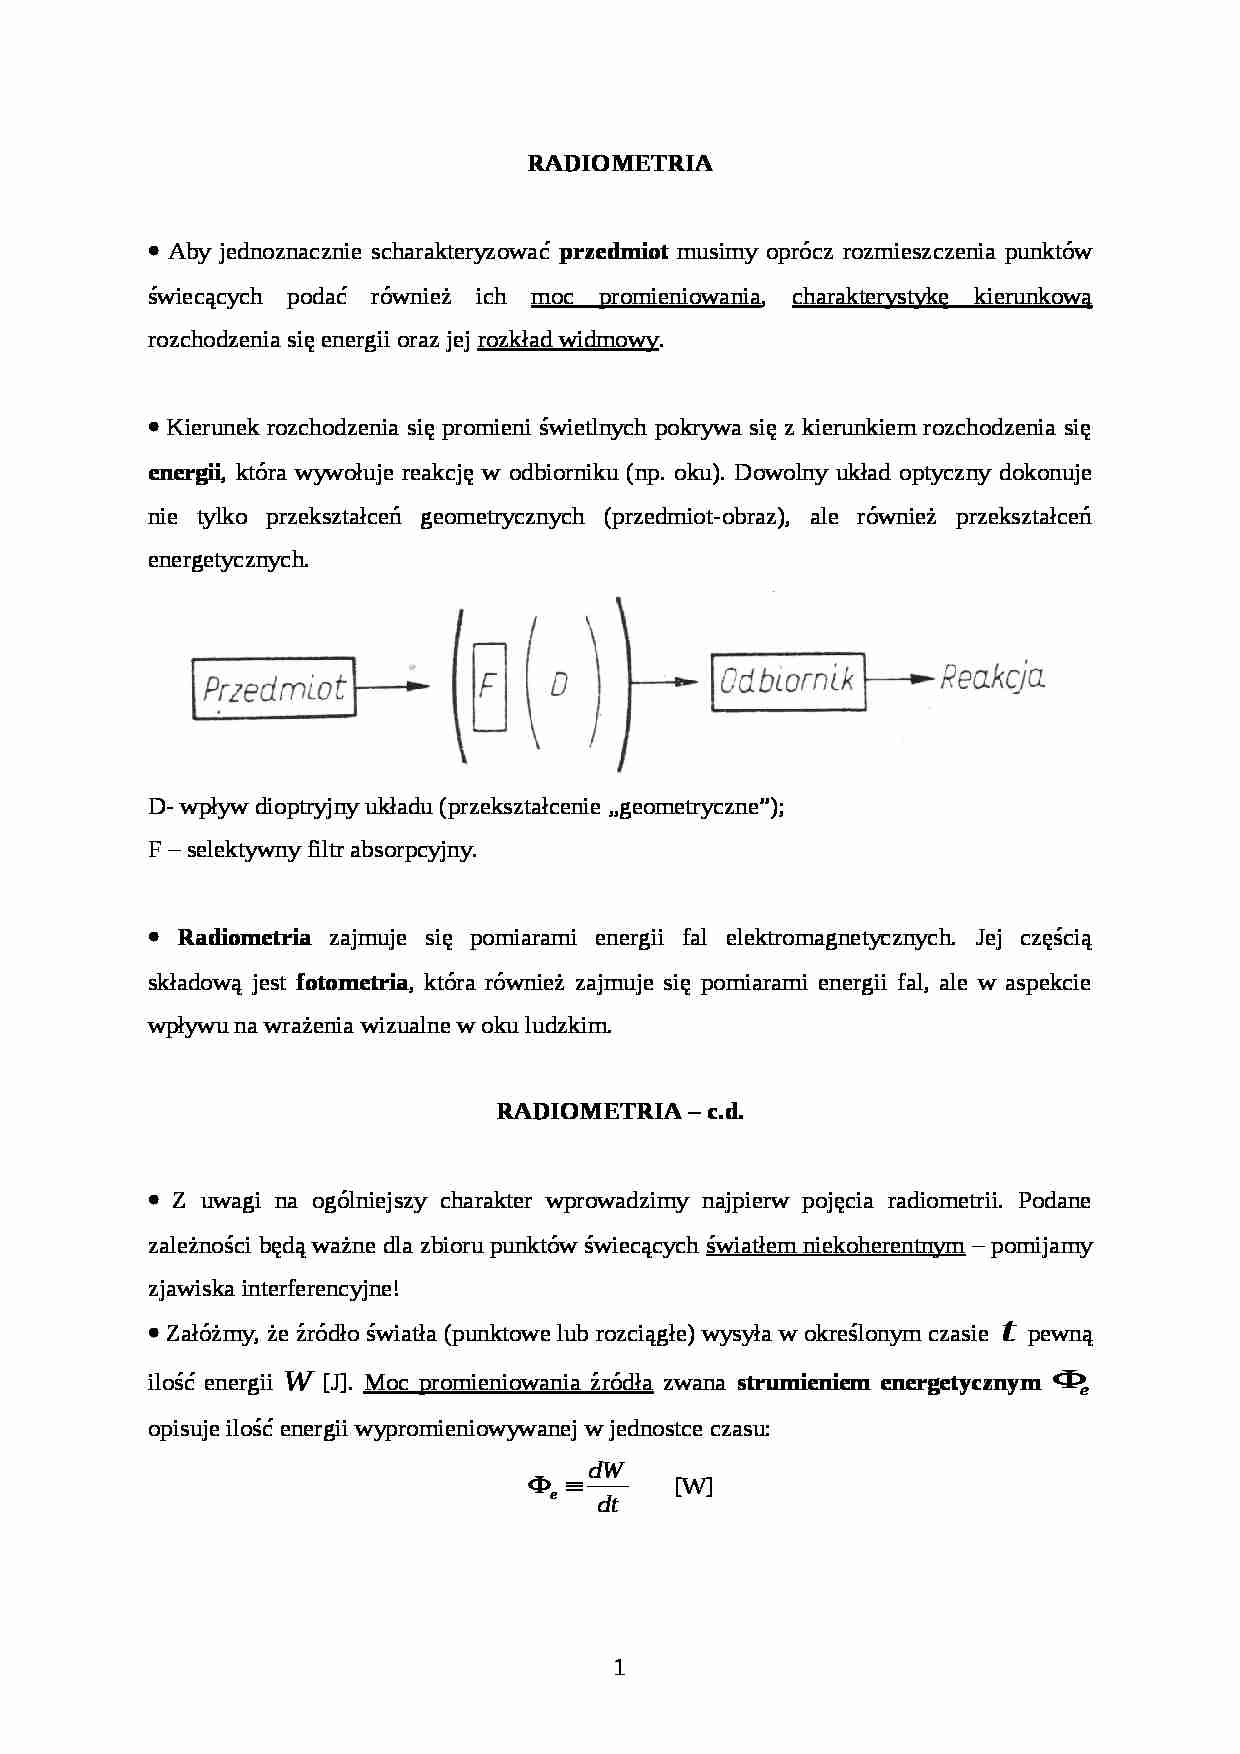 Radiometria-opracowanie - strona 1